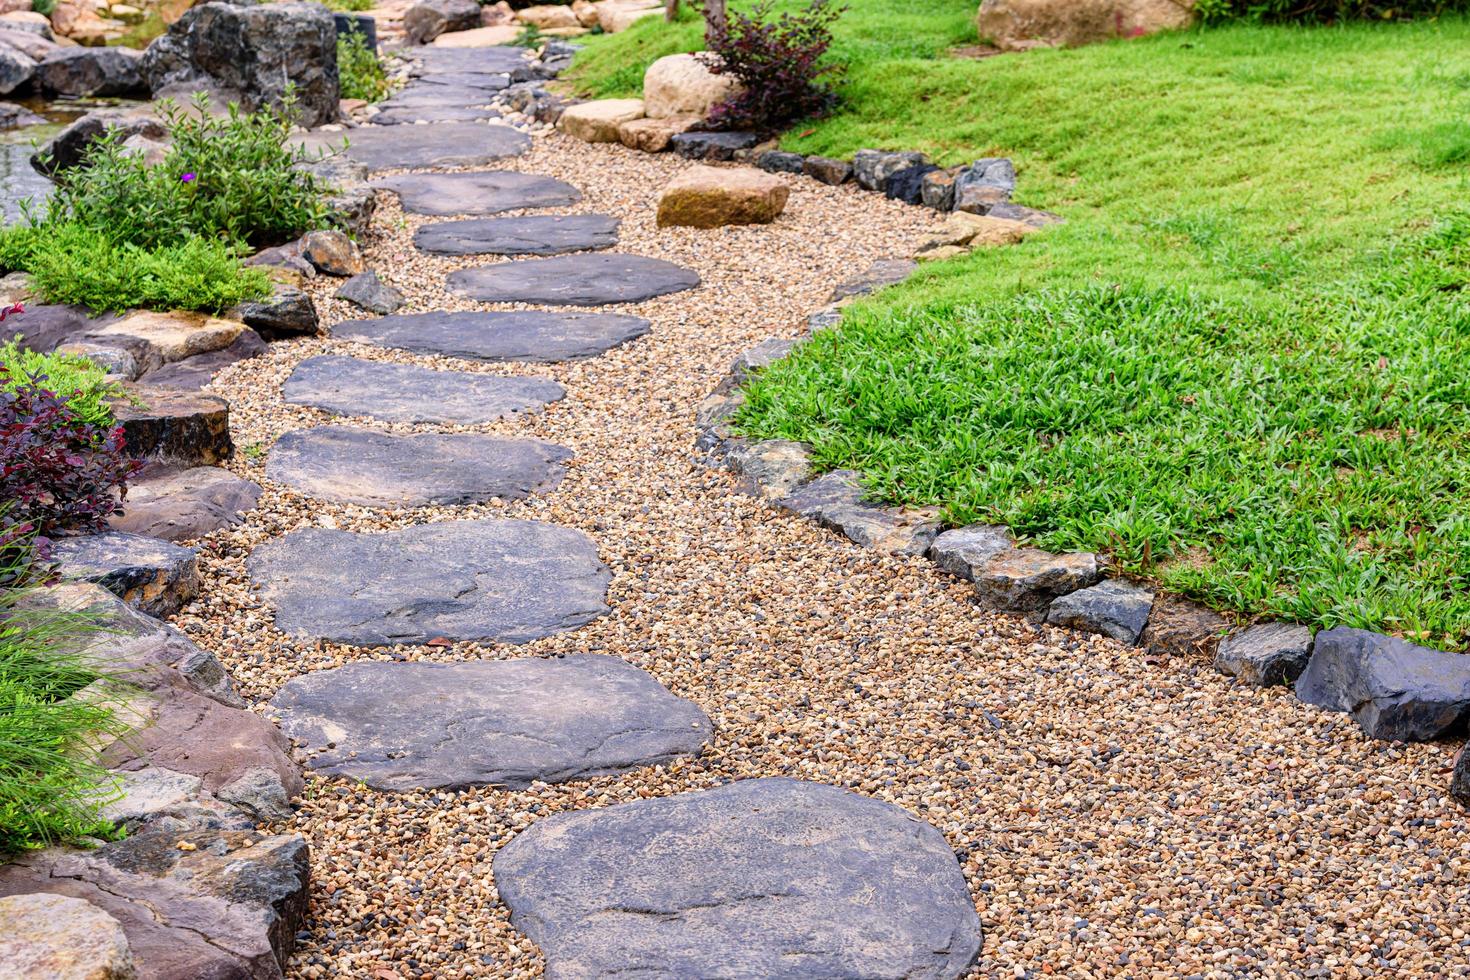 caminho de pedra em um jardim de estilo japonês foto